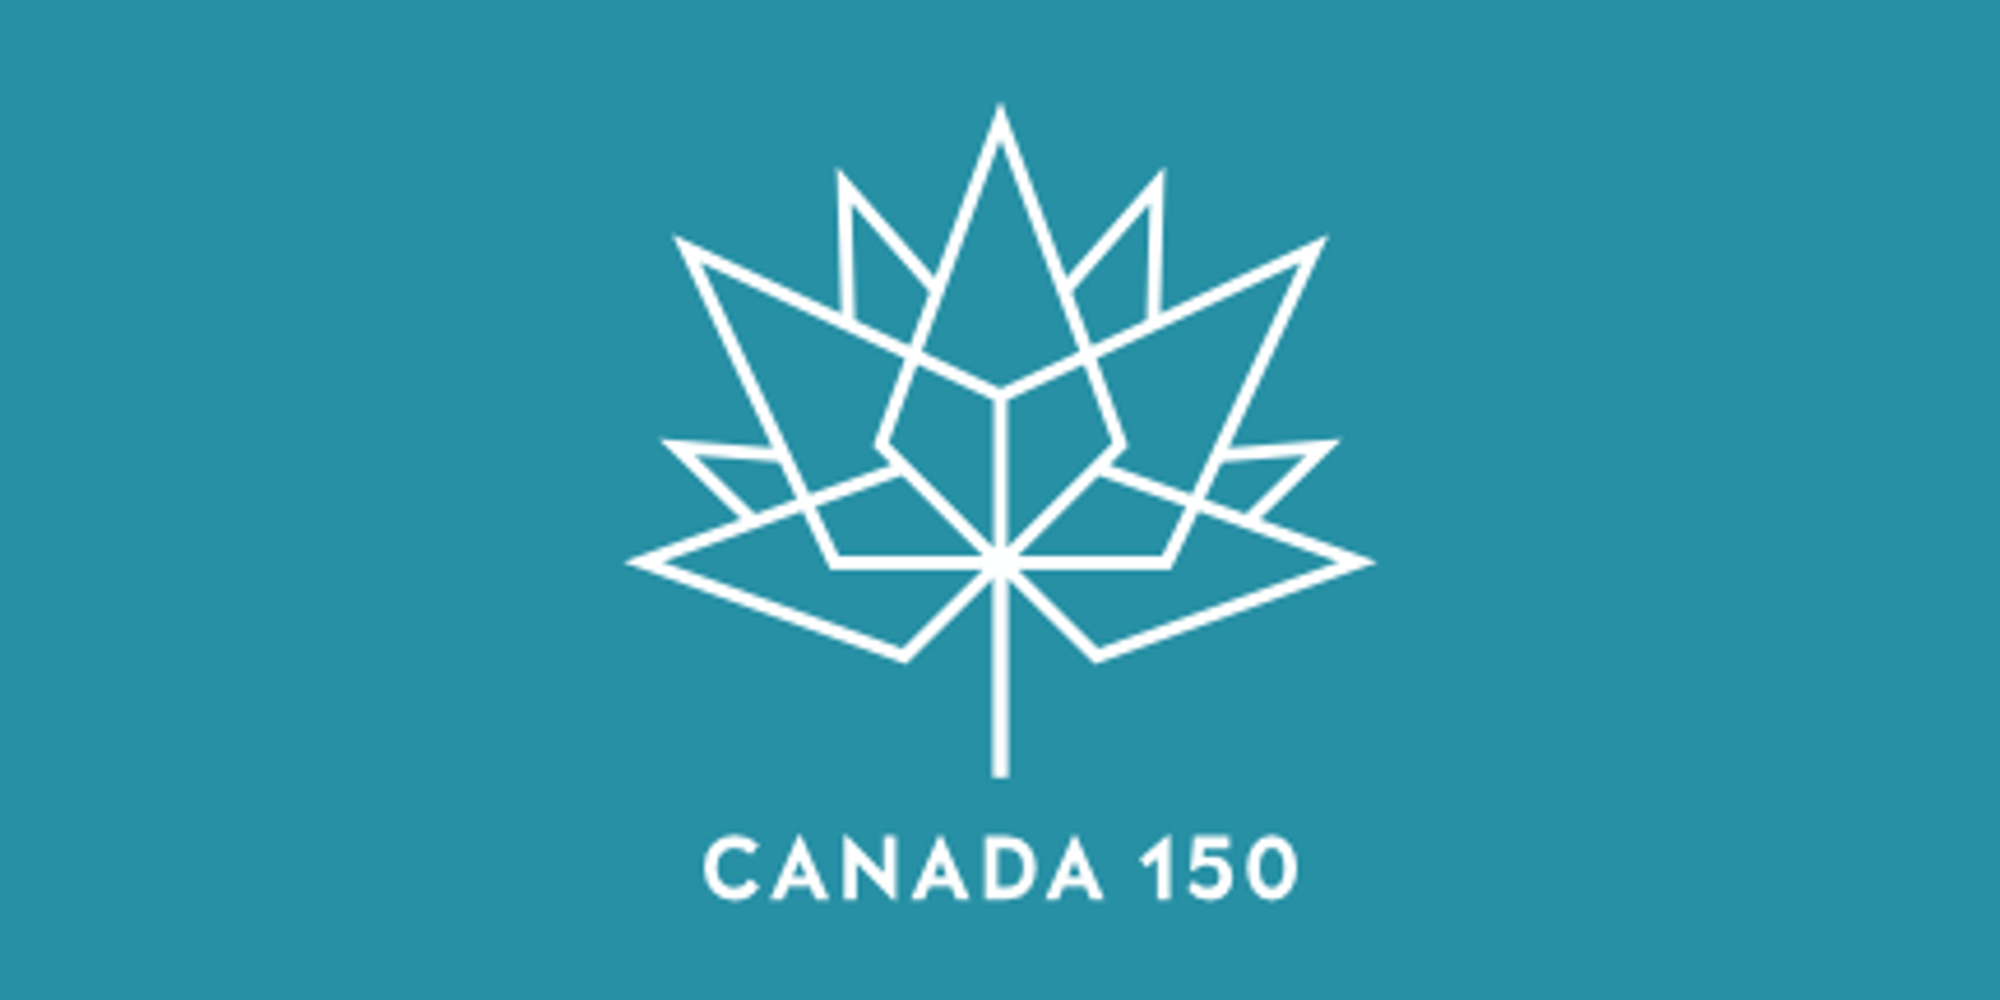 Canada 150th Anniversary Flag Teal 90cm X 180cm